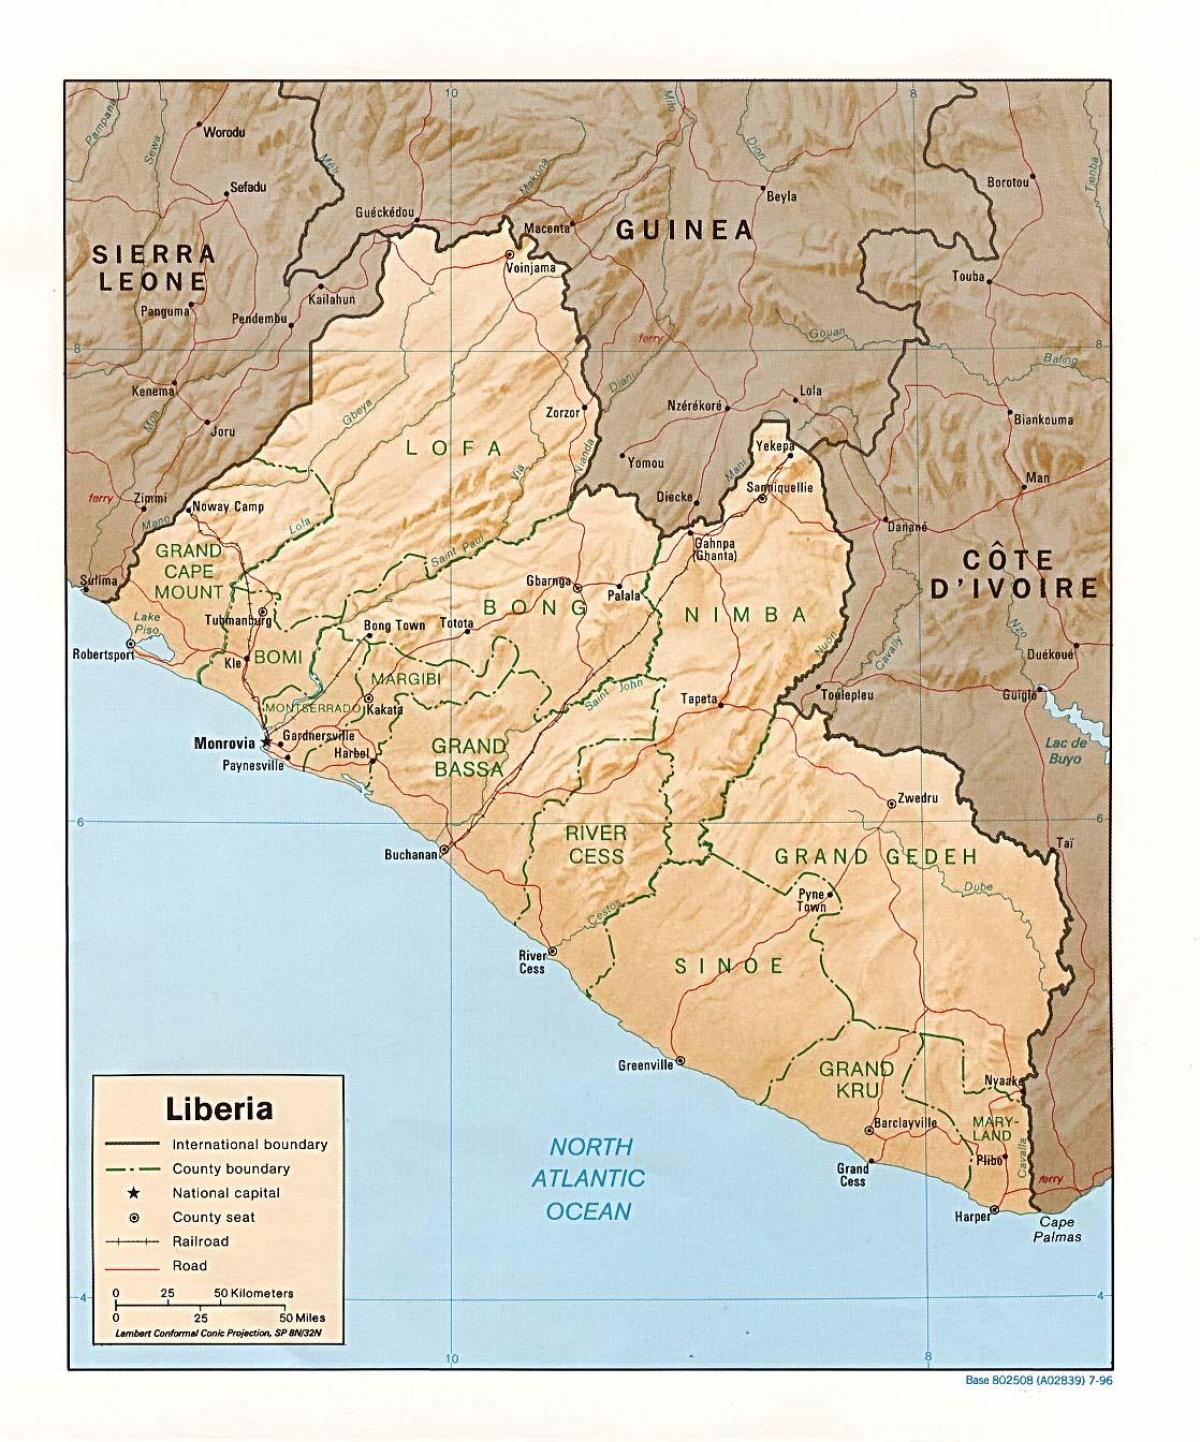 zeichnen Sie die relief-Karte von Liberia